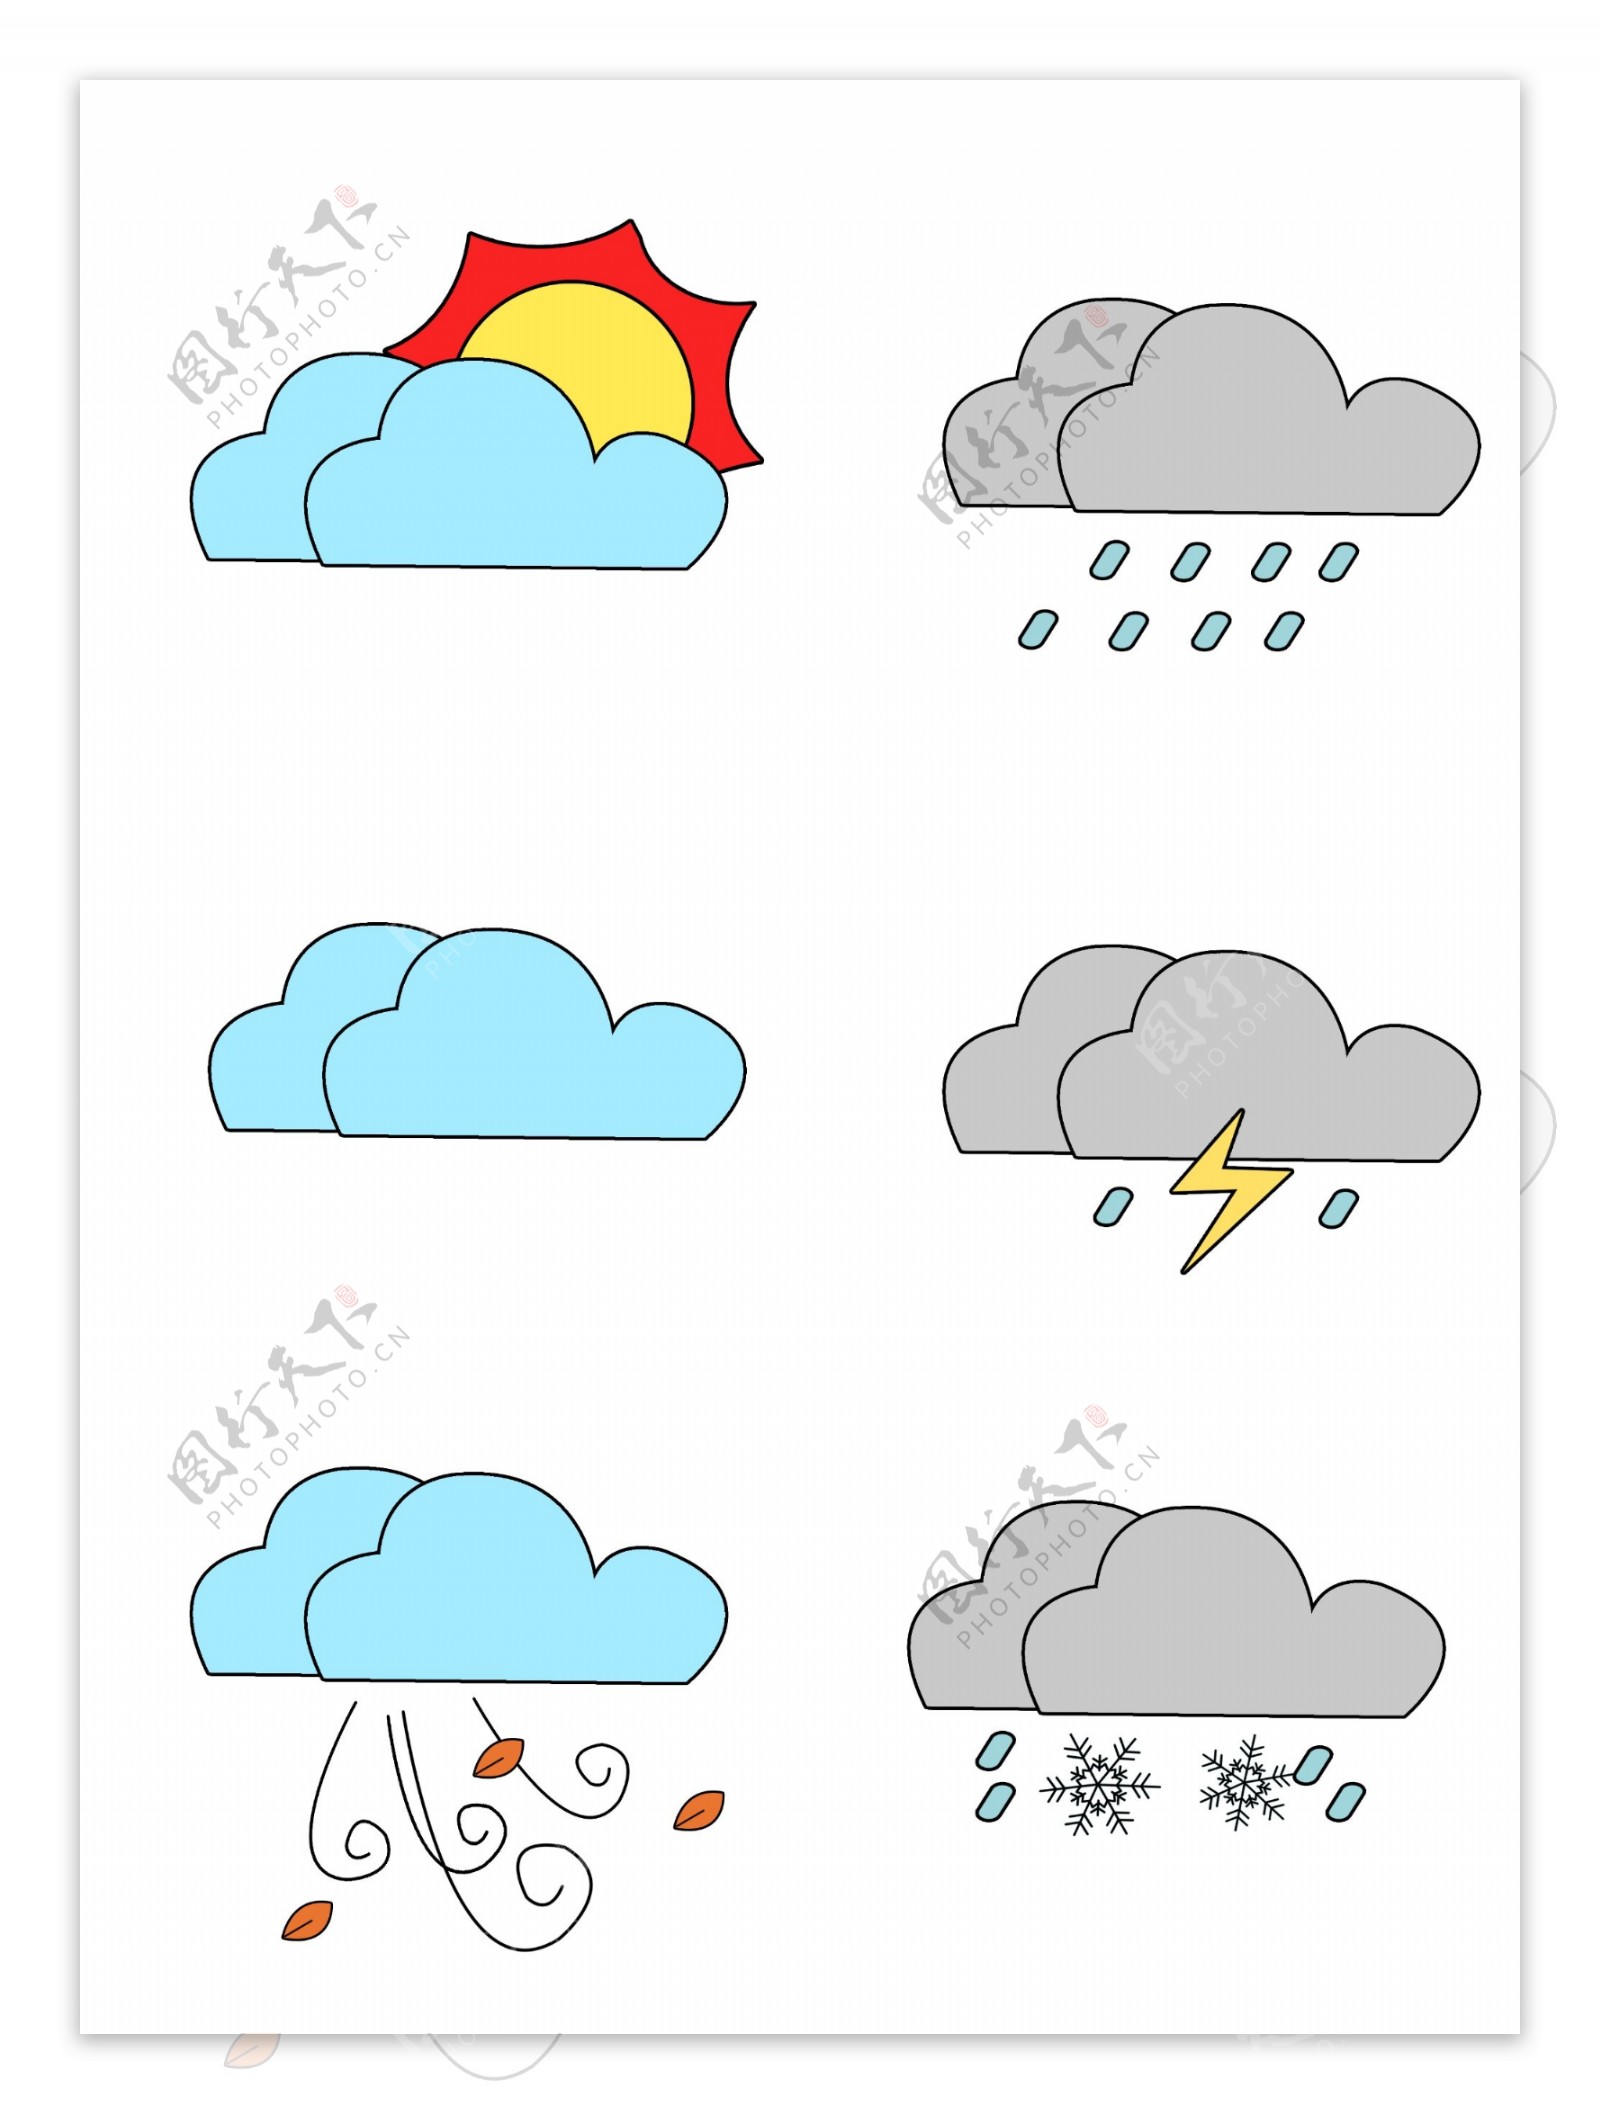 可爱简约创意卡通天气预报元素